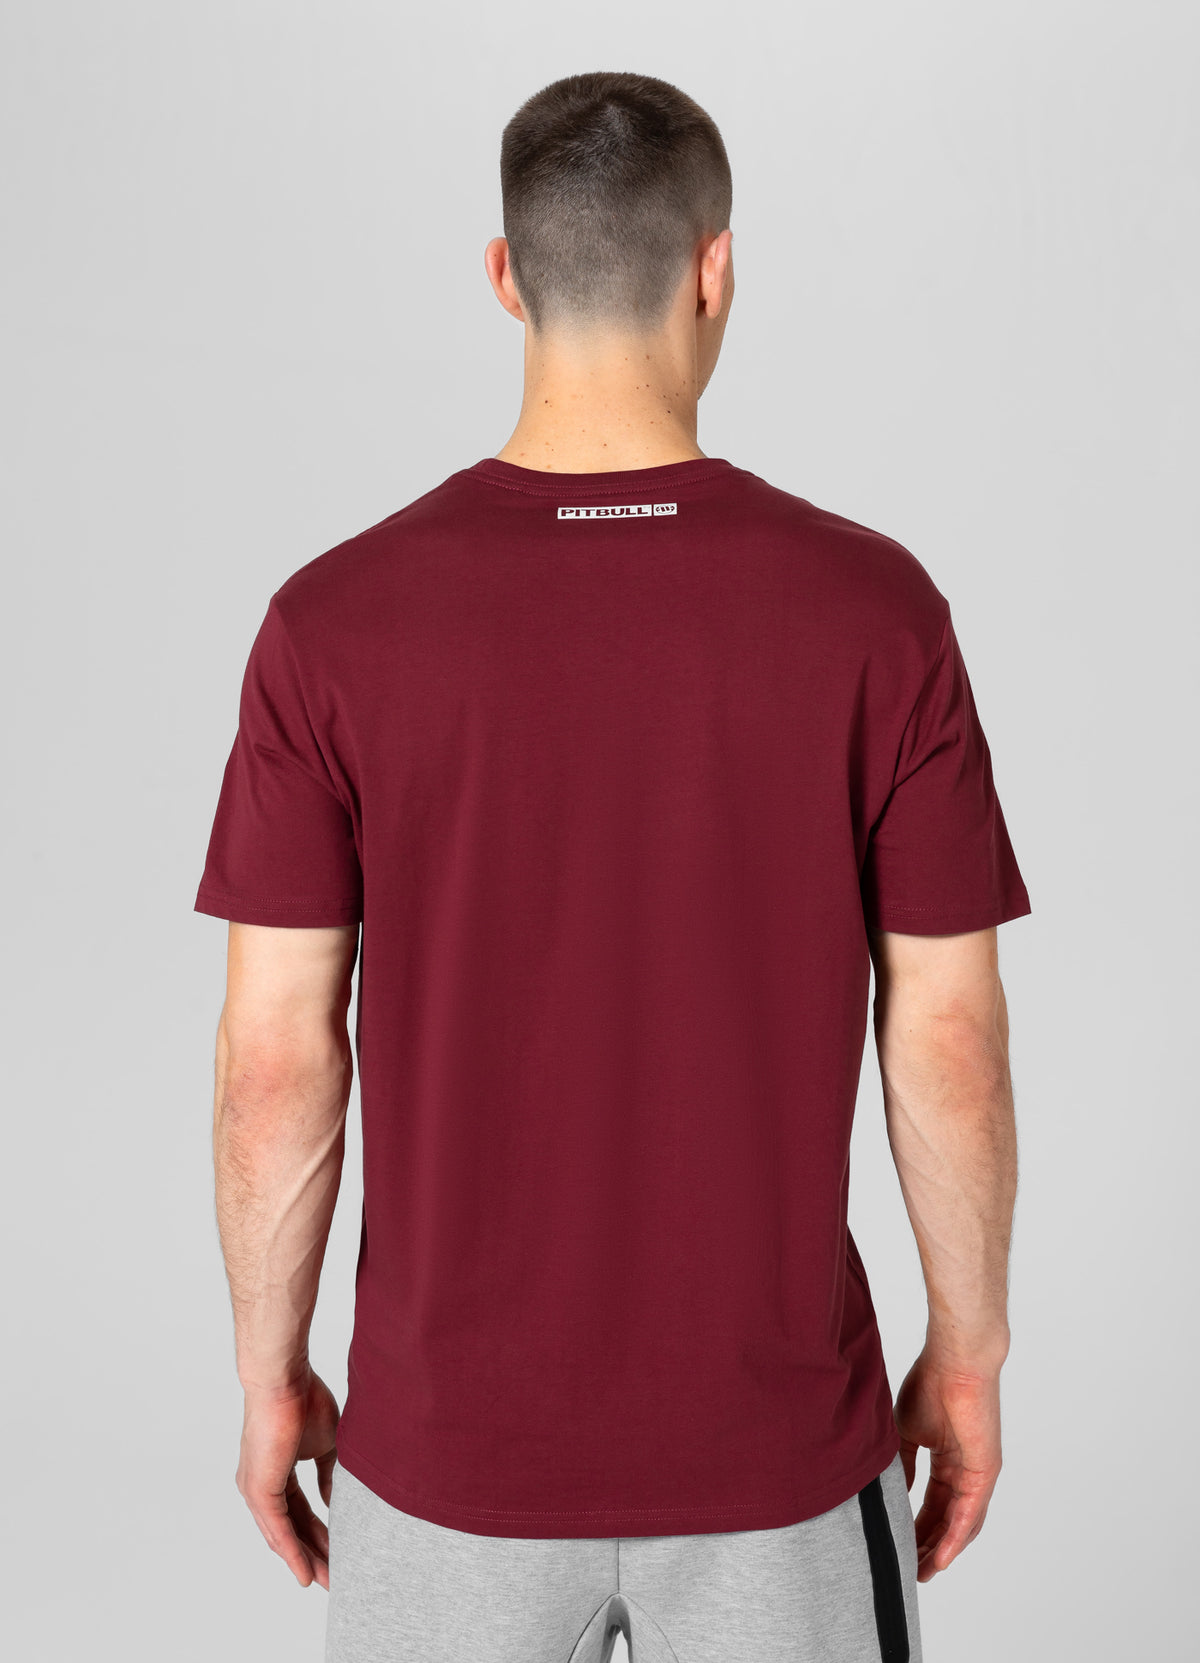 HILLTOP Lightweight Burgundy T-shirt